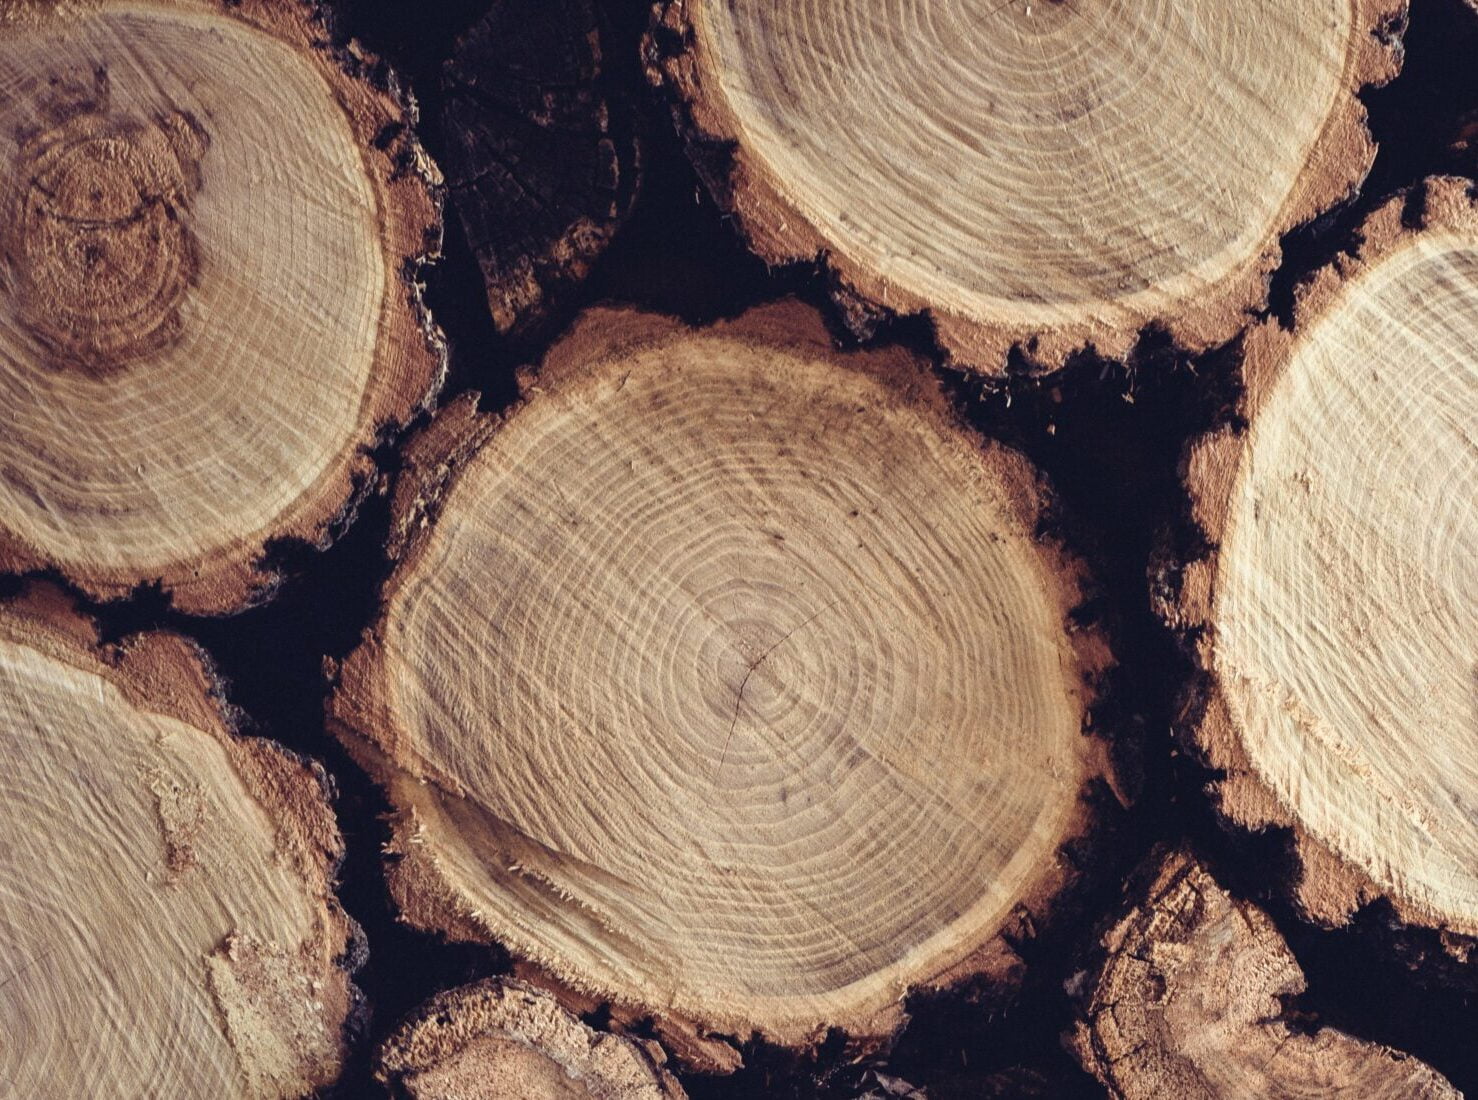 oak logs showing growth rings